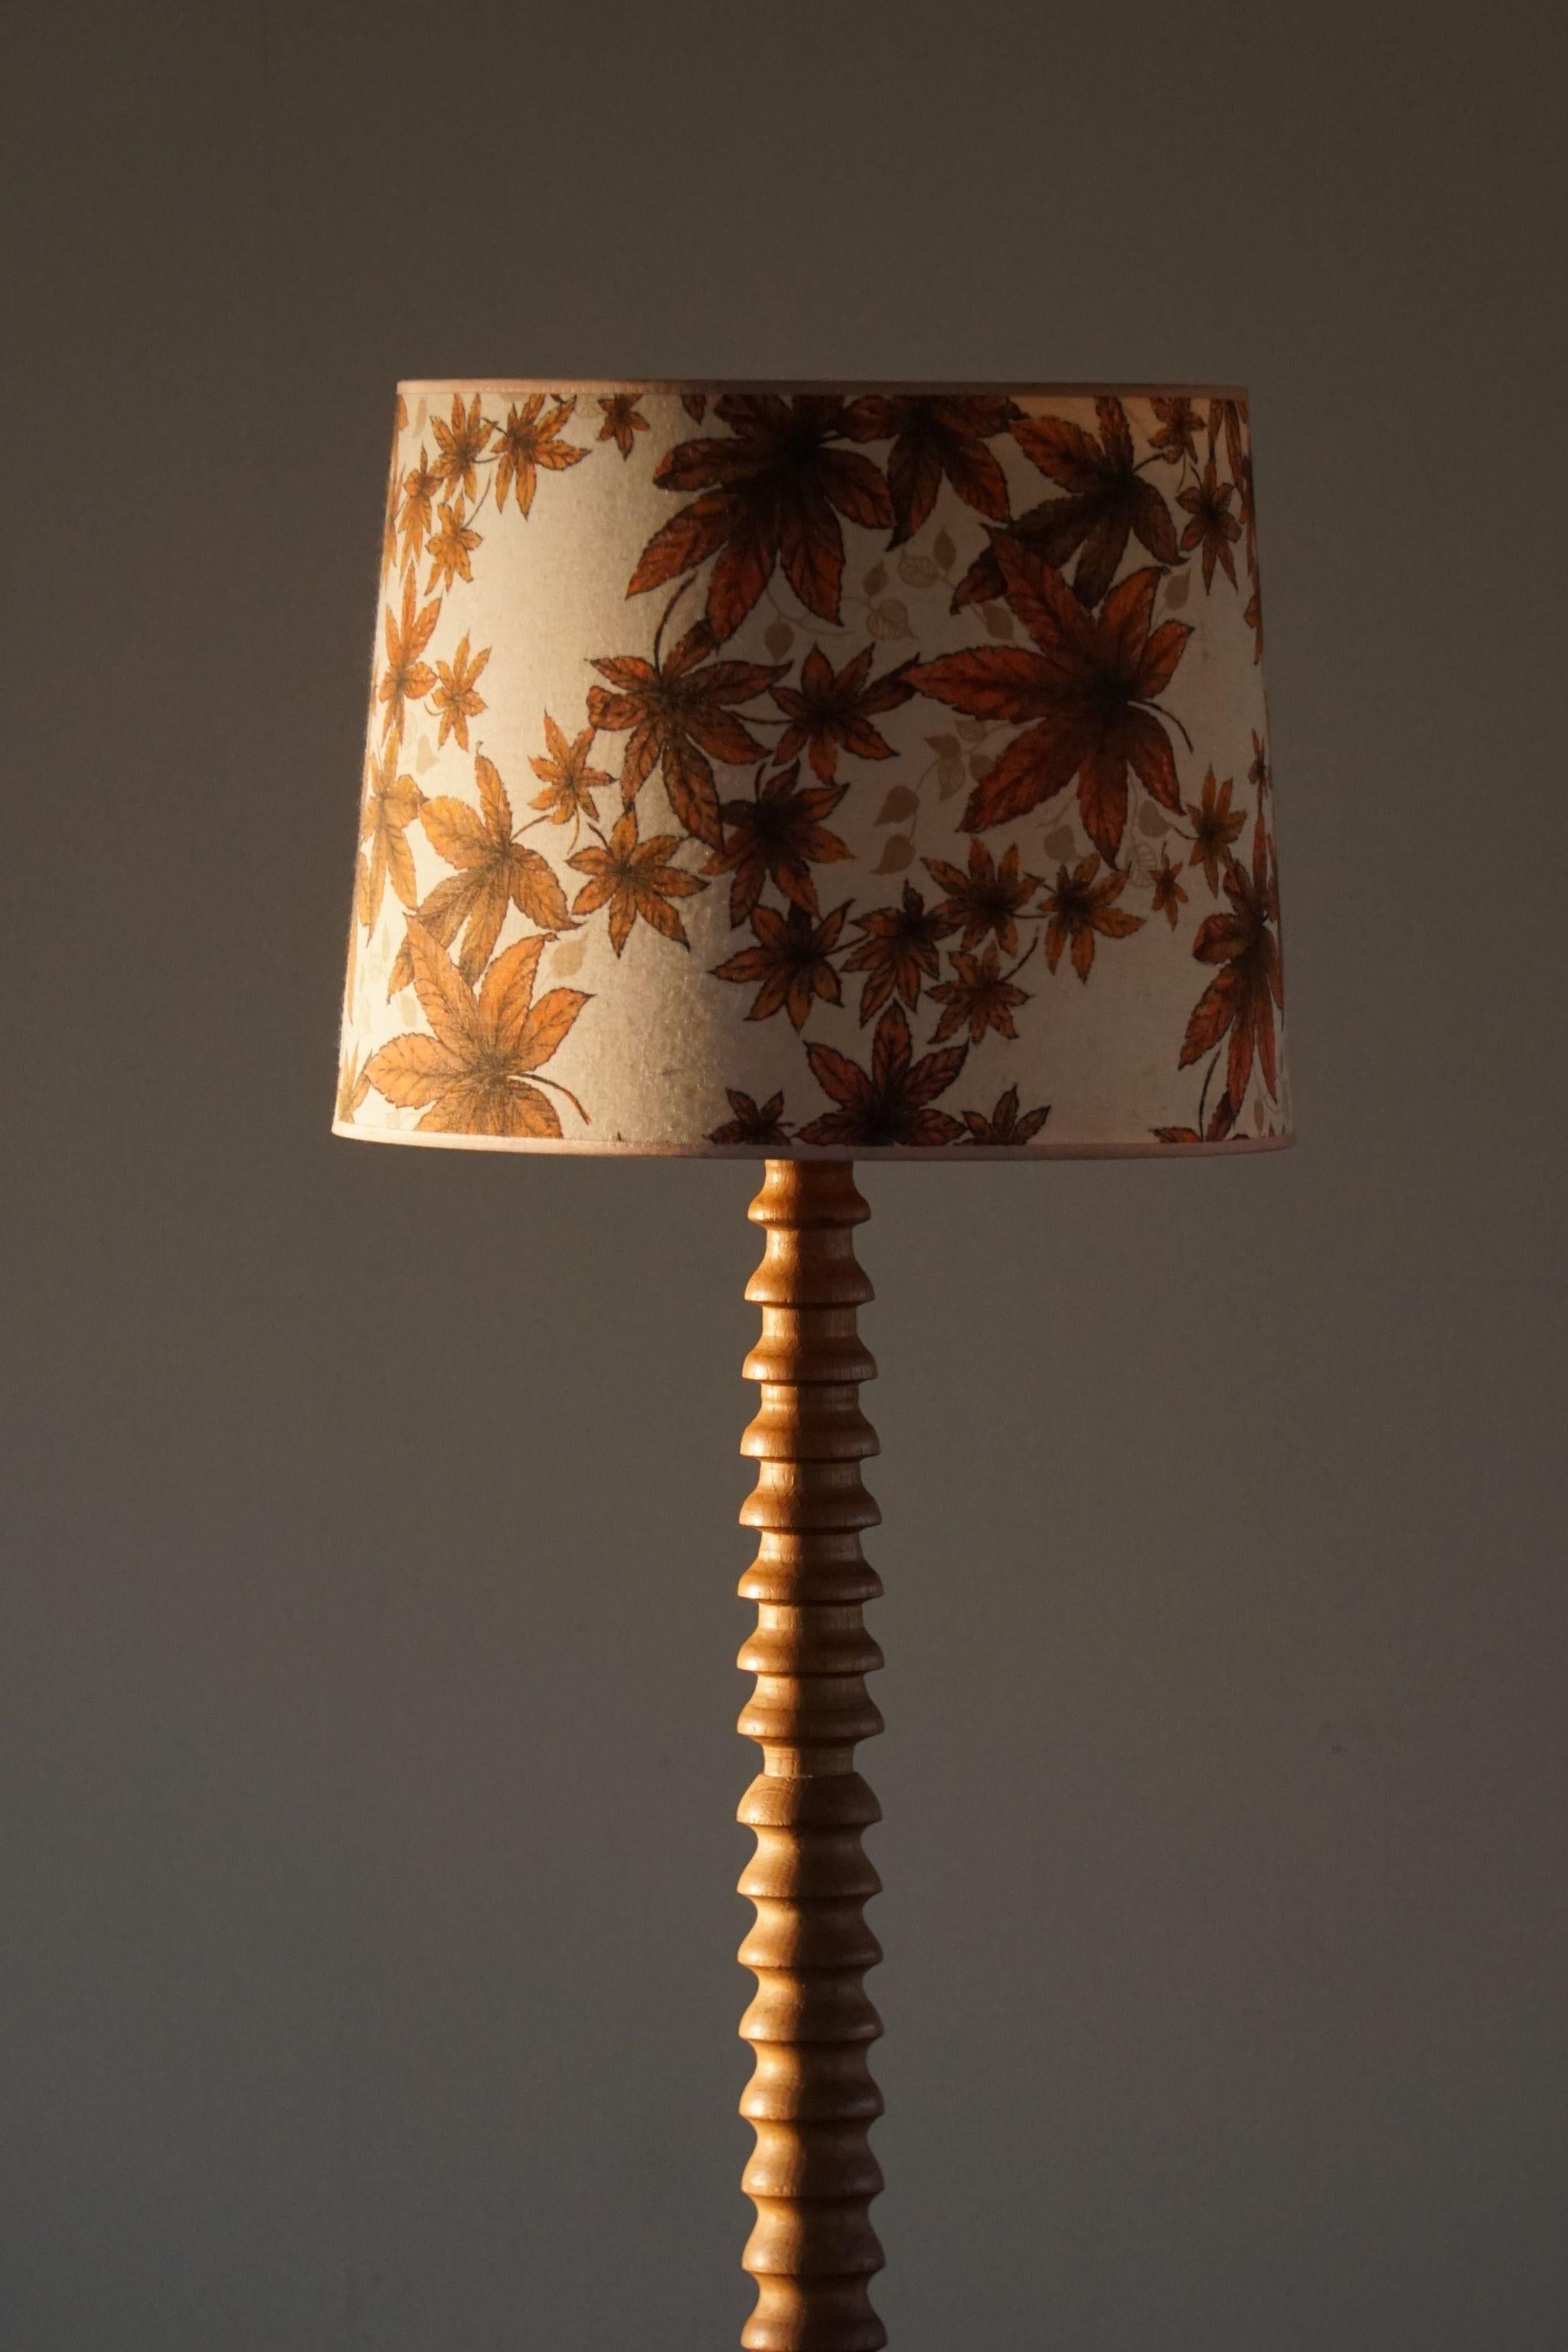 Baroque Sculptural Twisted Oak Floor Lamp, Danish Midcentury, 1950s